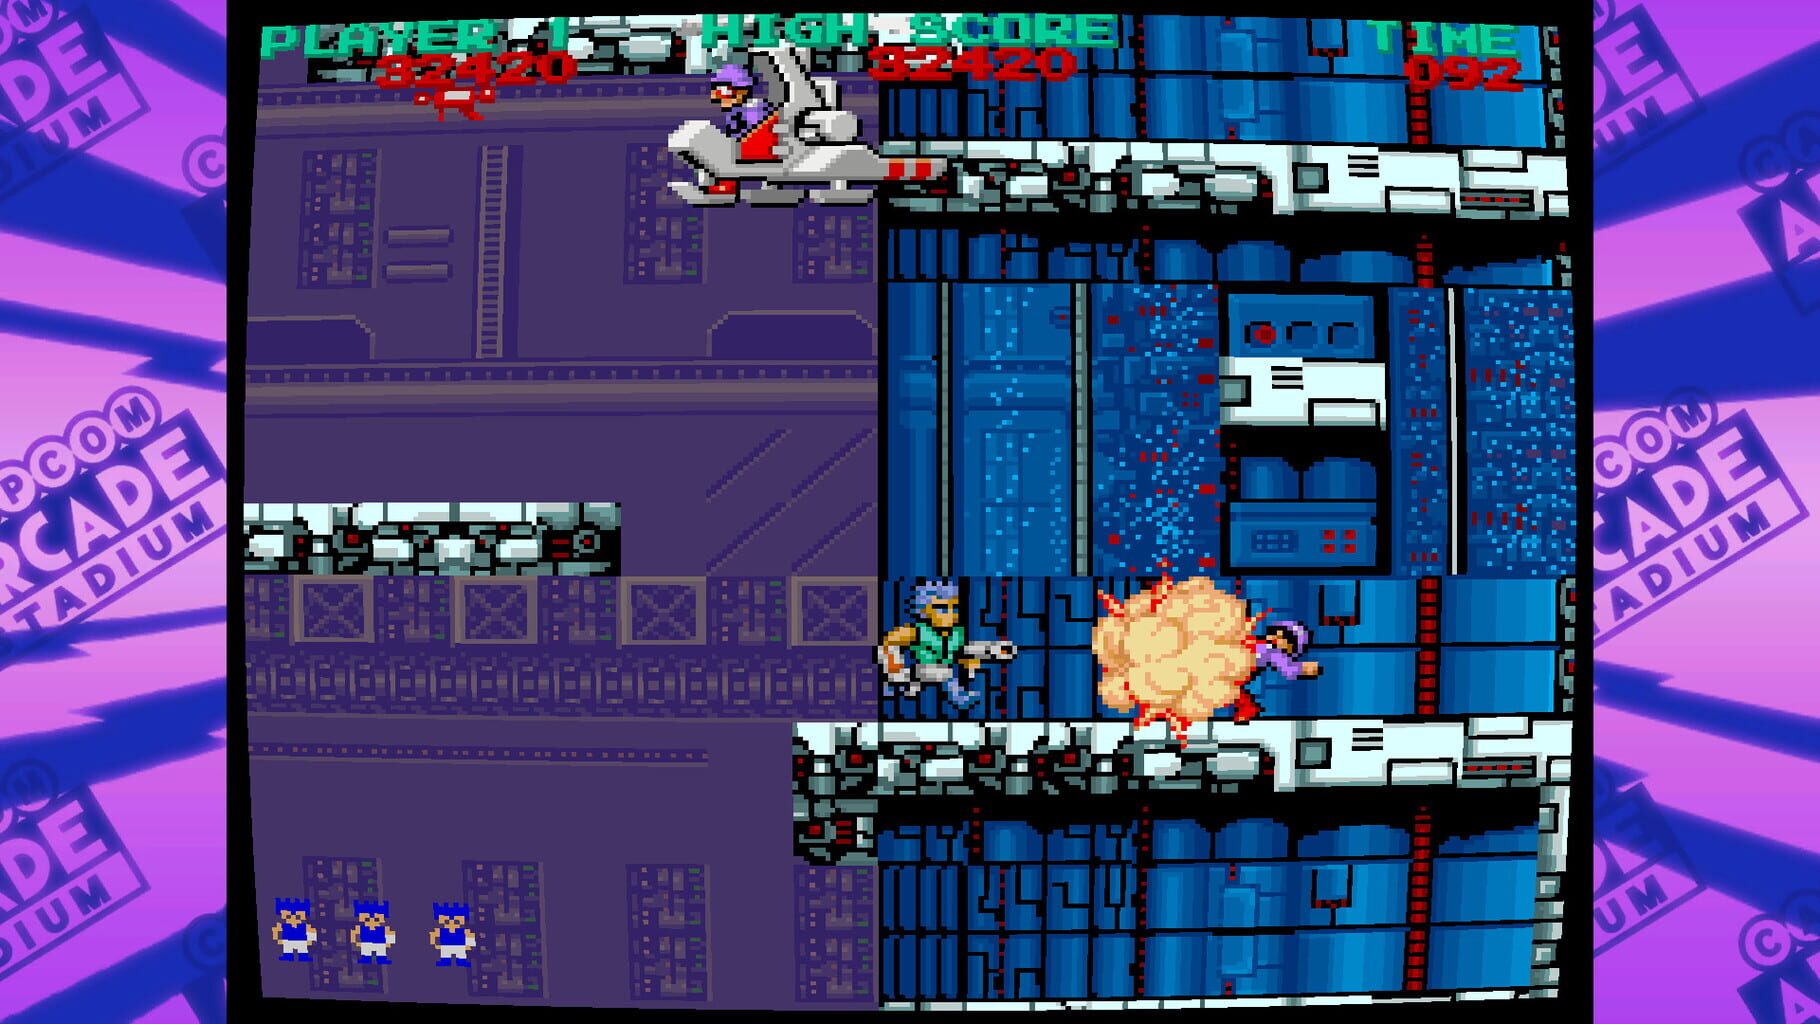 Capcom Arcade Stadium: Bionic Commando screenshot